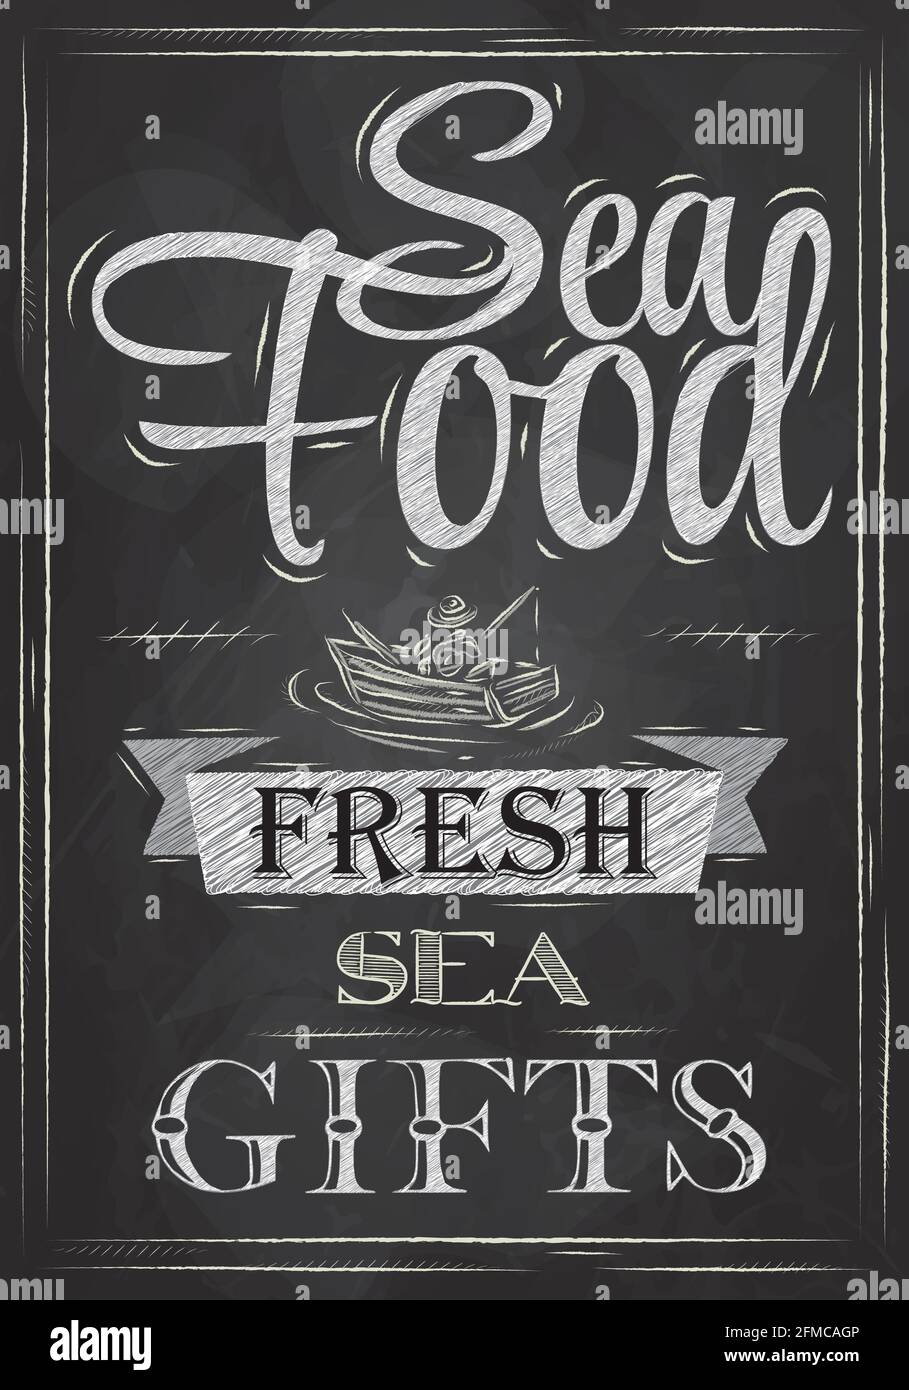 Affiche fruits de mer frais fruits de mer dans un style rétro stylisé dessin avec de la craie sur le tableau noir Illustration de Vecteur